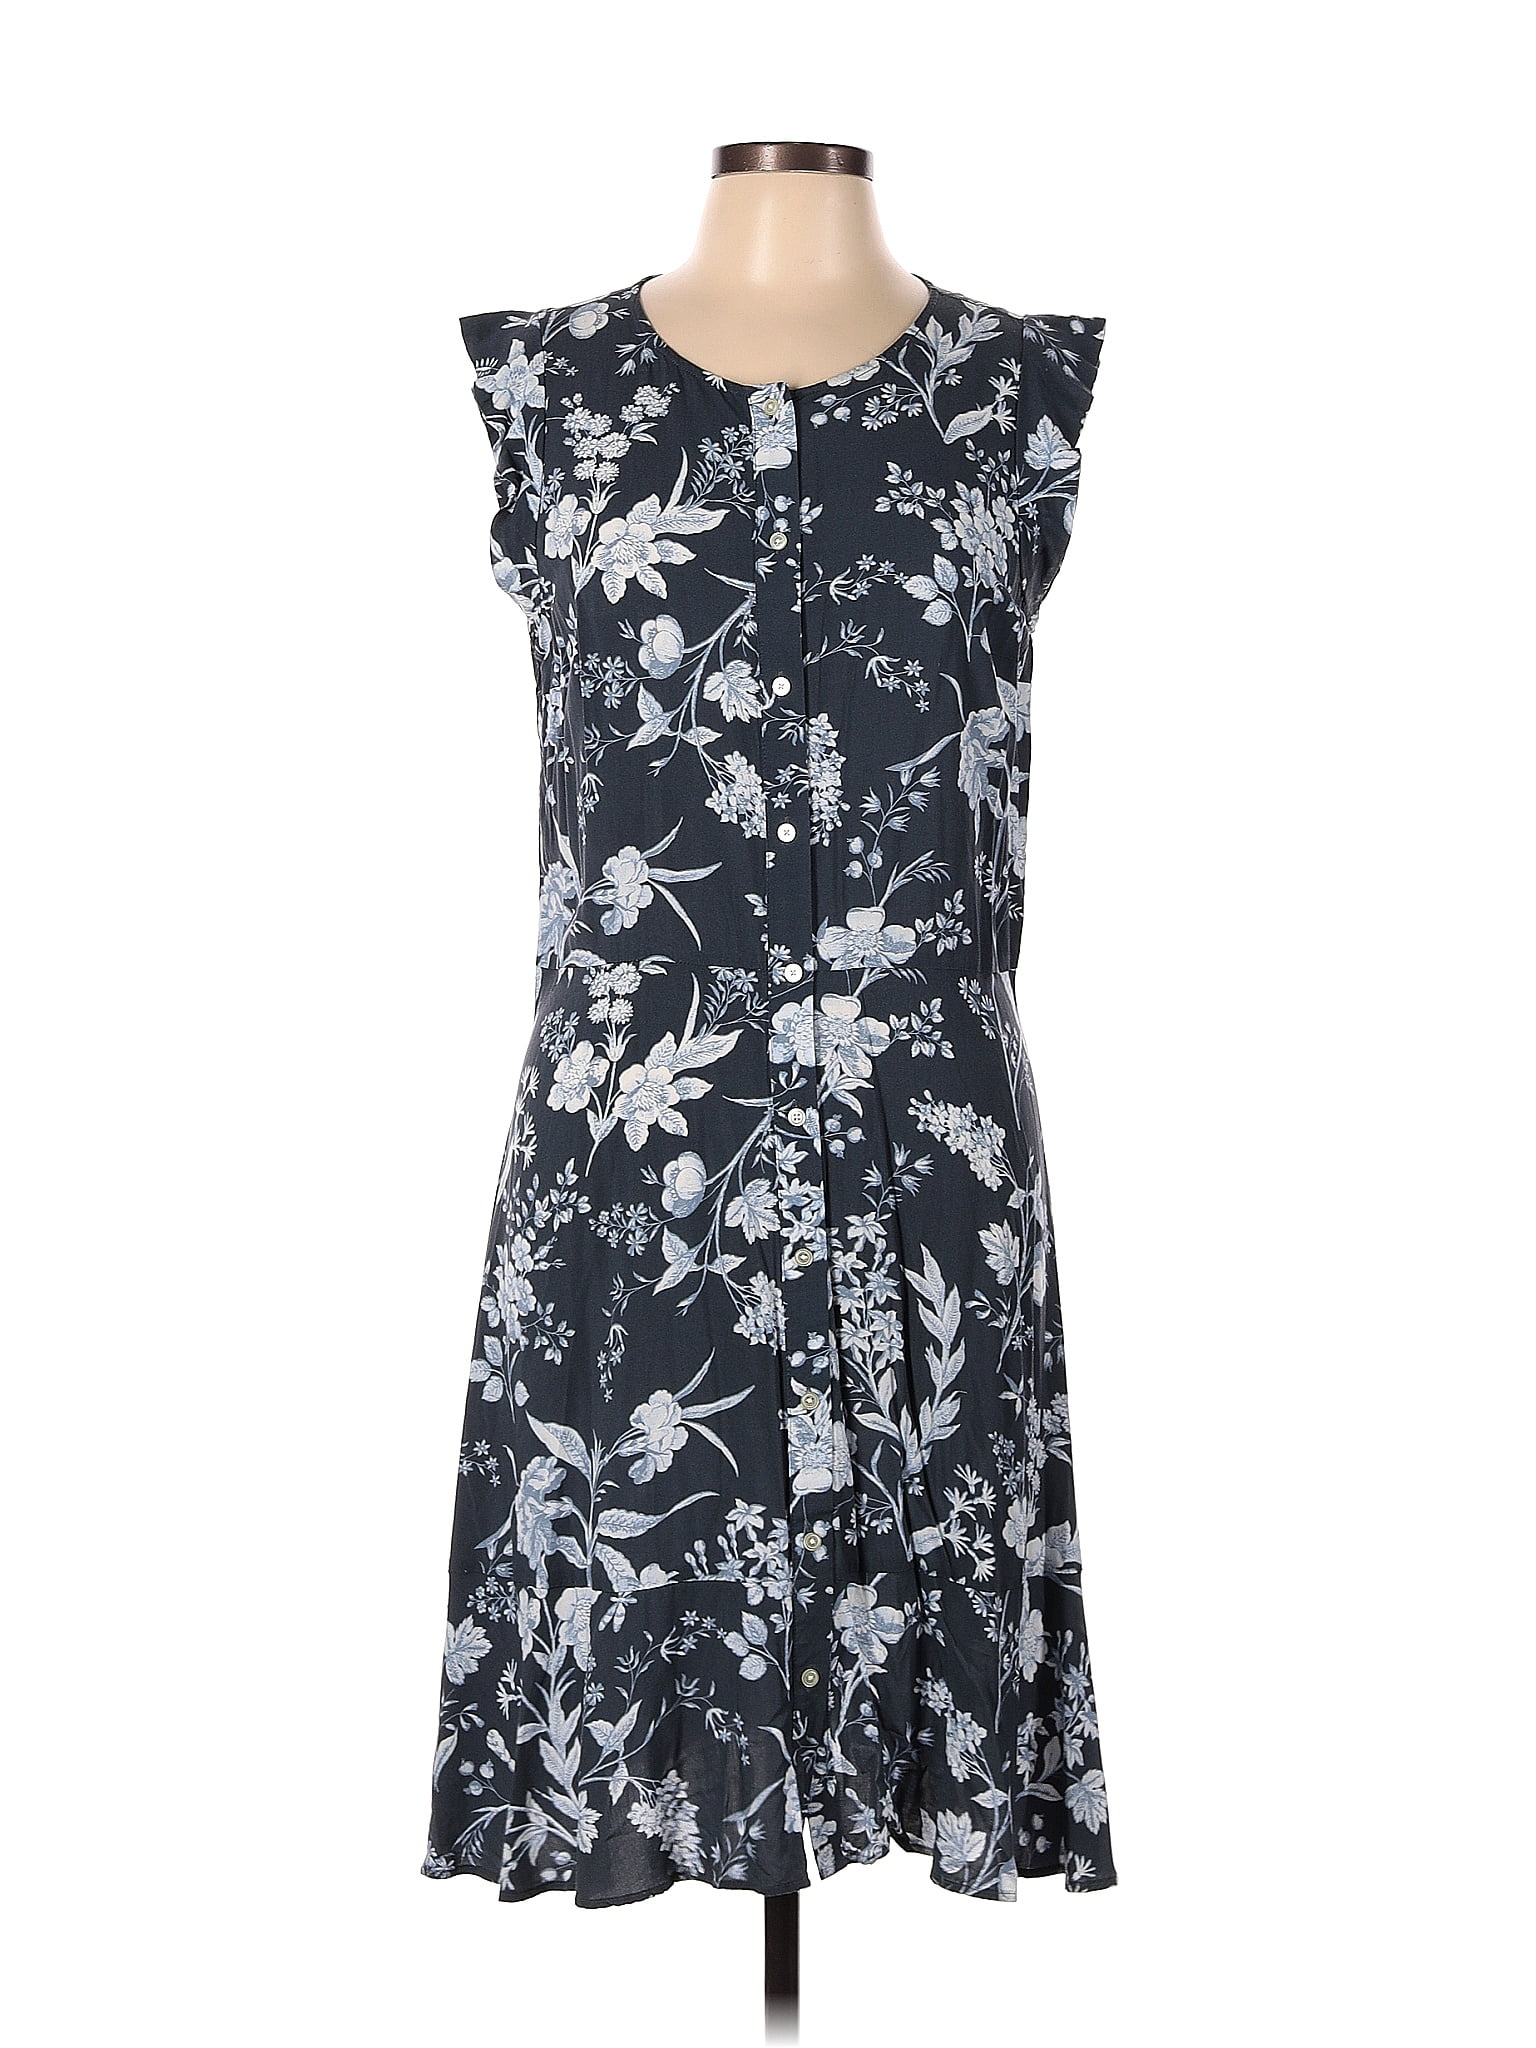 Ann Taylor LOFT 100% Rayon Floral Multi Color Blue Casual Dress Size 12 ...